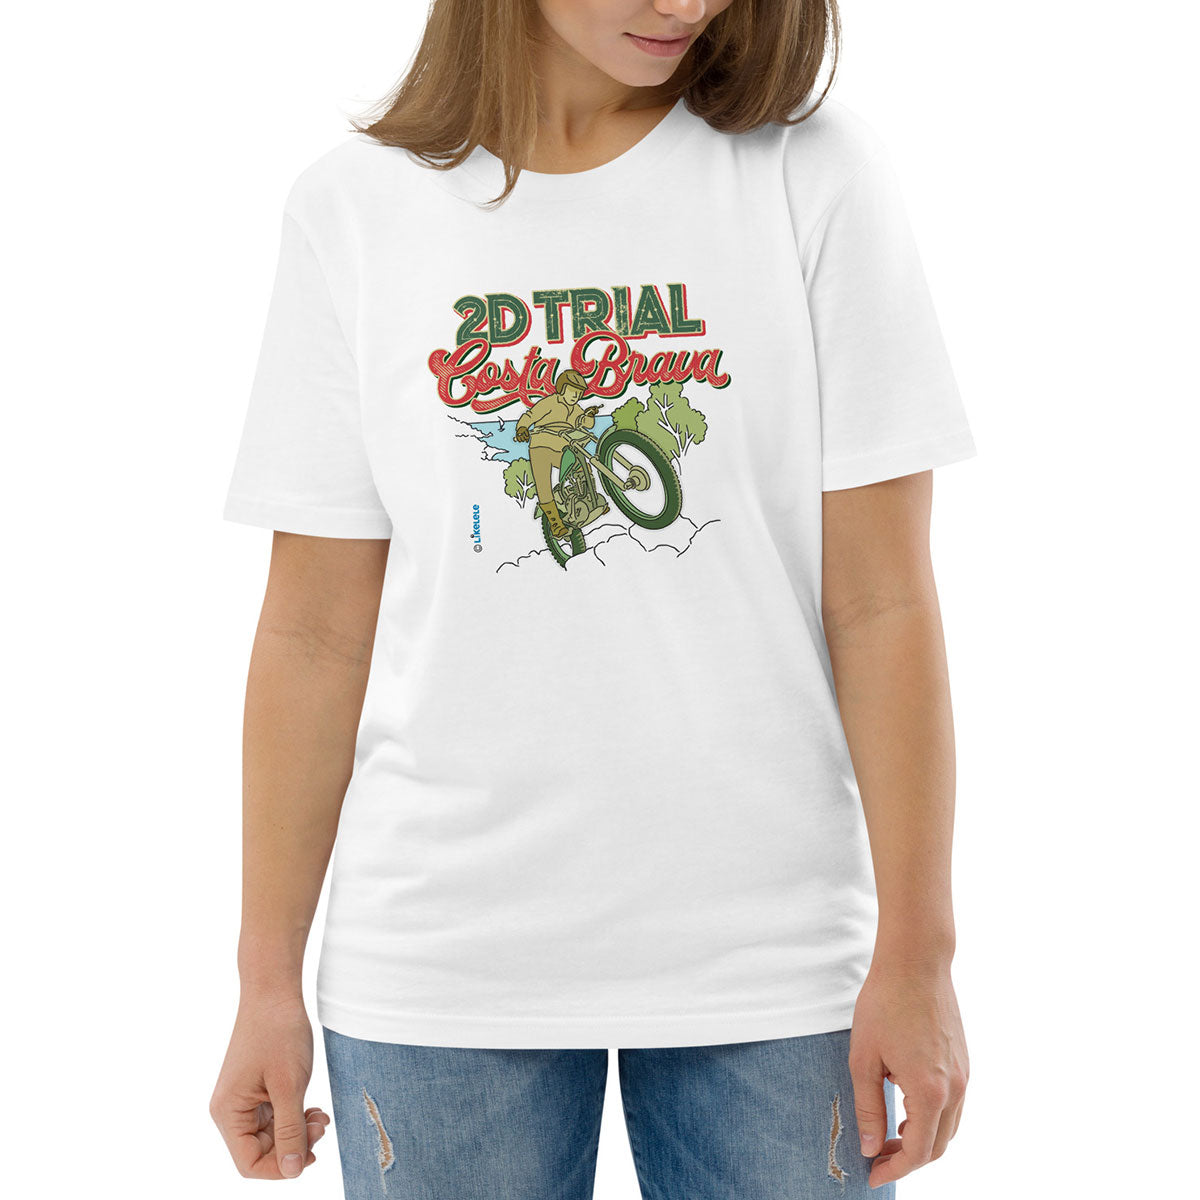 2D TRIAL COSTA BRAVA · Camiseta m/corta·Mujer/Unisex · Medium·Blanco-132a2